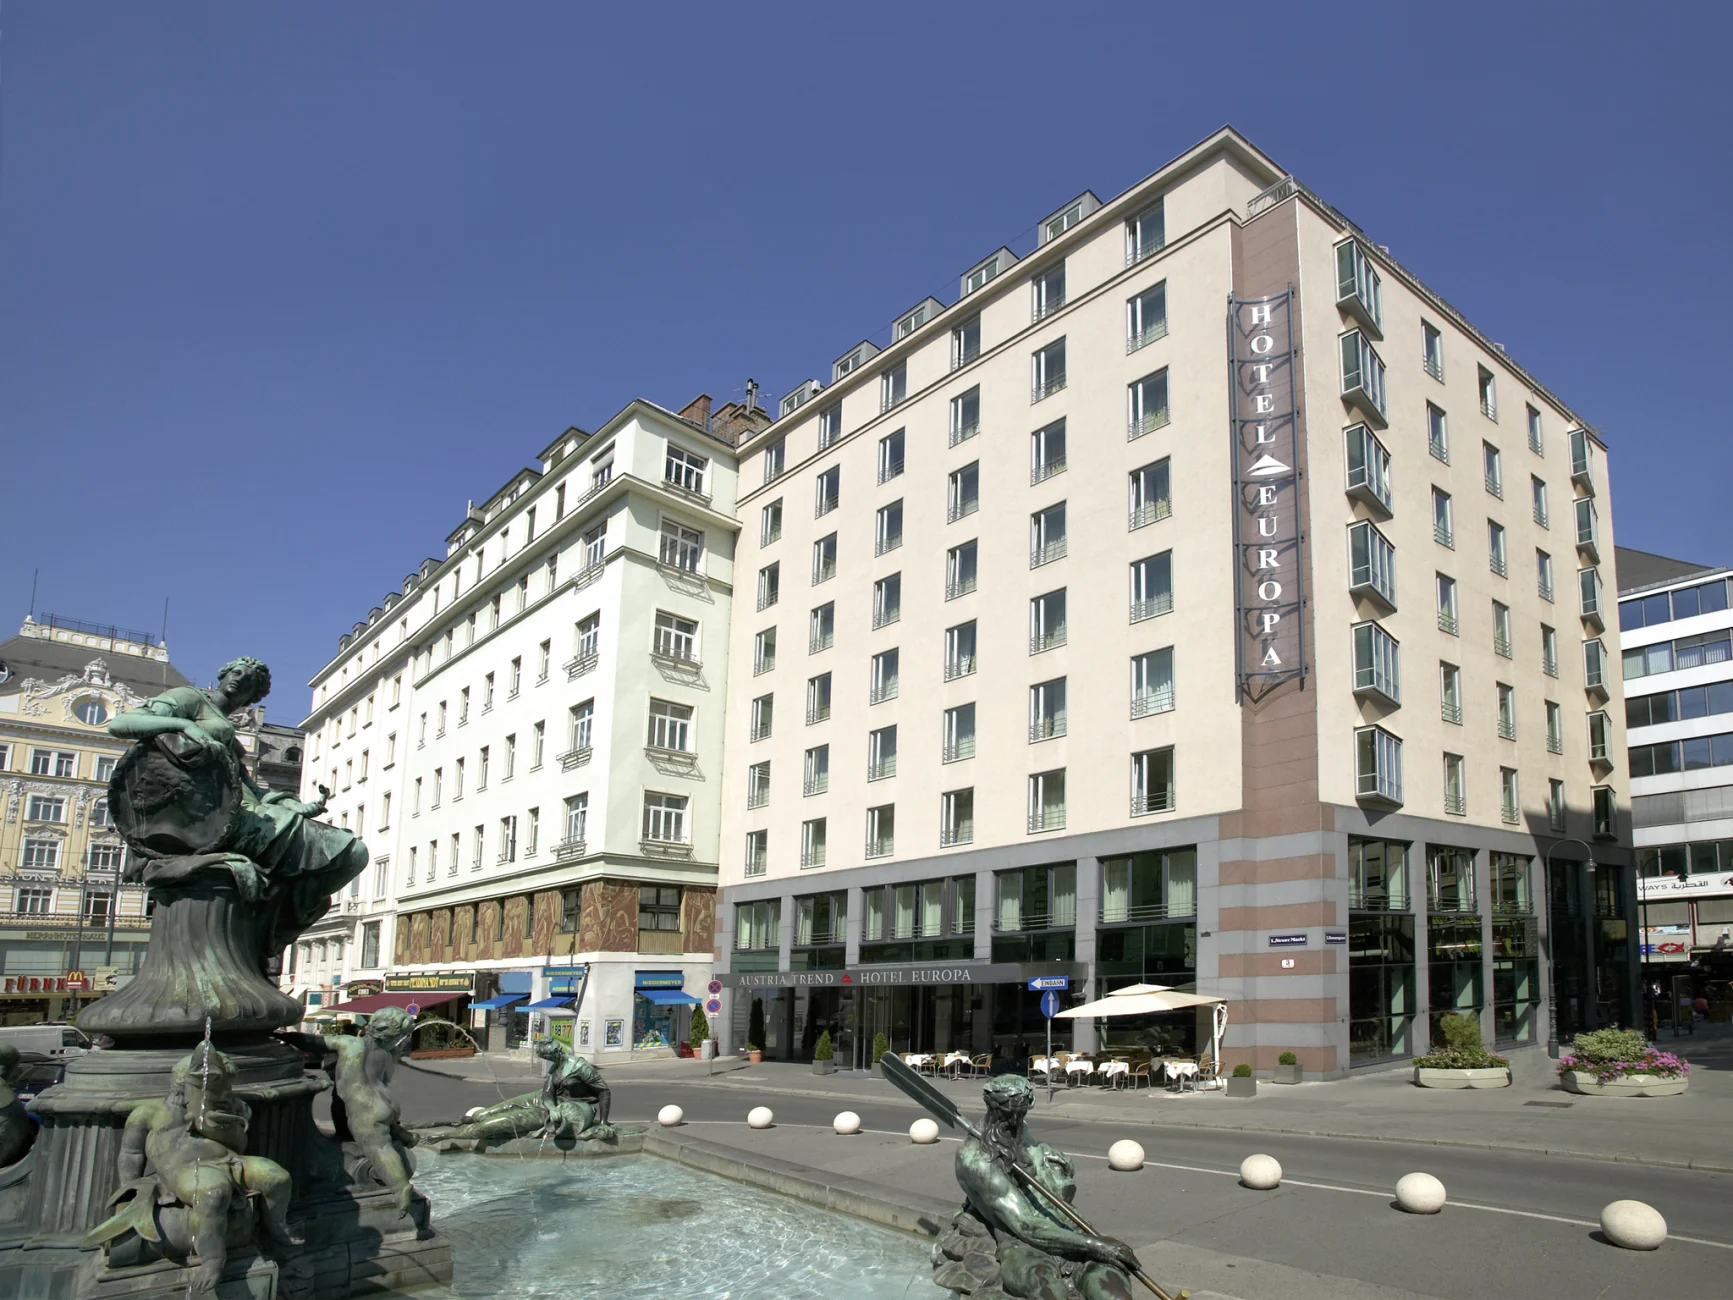 Trend Hotel Europa Wien